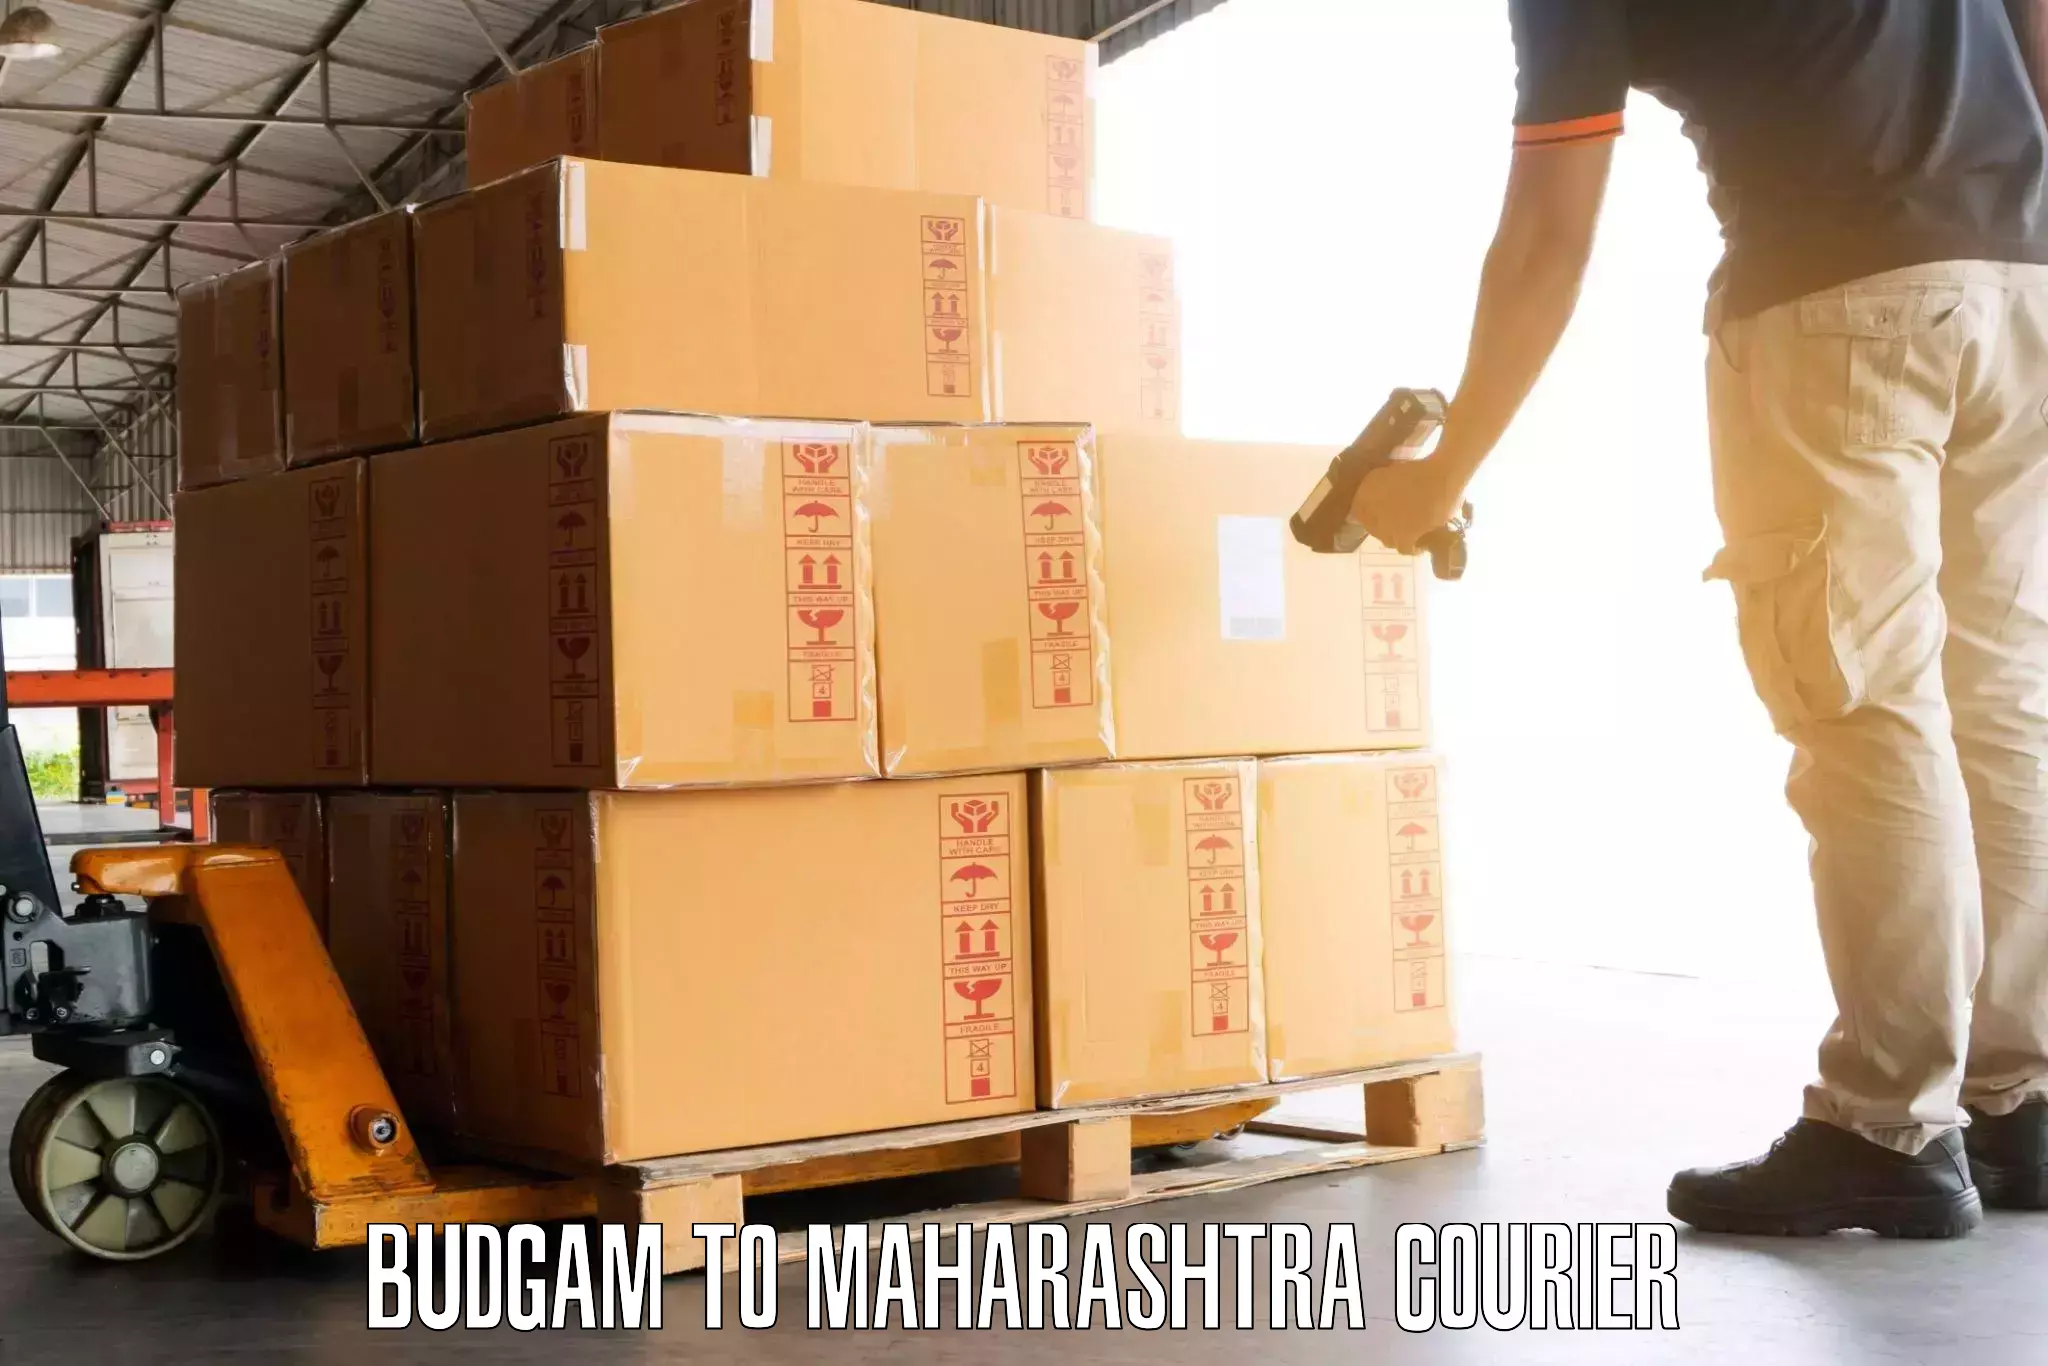 Baggage shipping rates calculator Budgam to Maharashtra